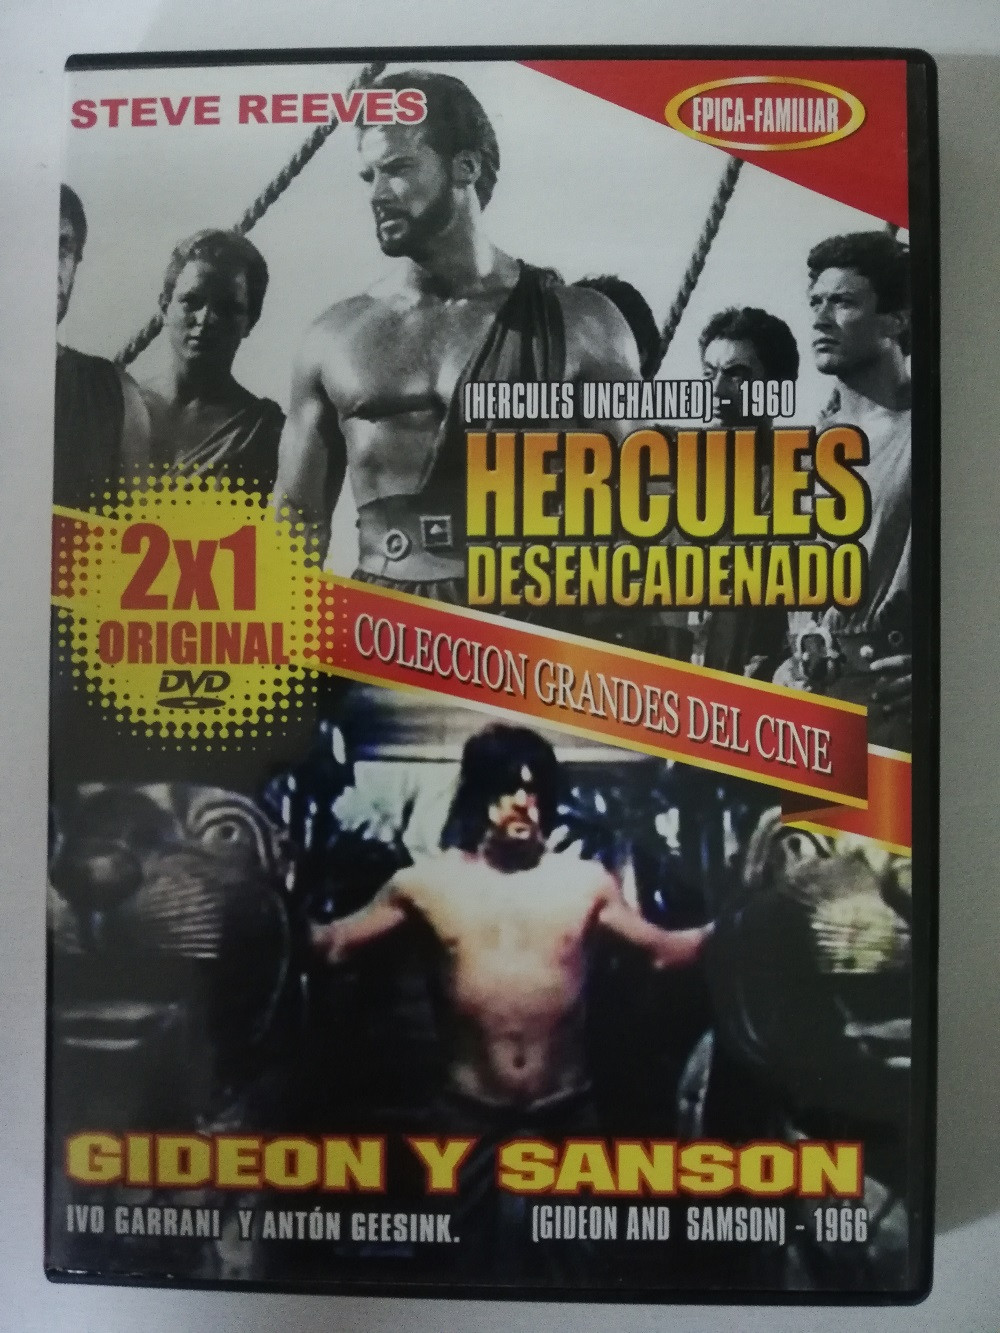 Imagen DVD HERCULES DESENCADENADO/GIDEON Y SANSON - COLECCIÓN GRANDES DEL CINE 1